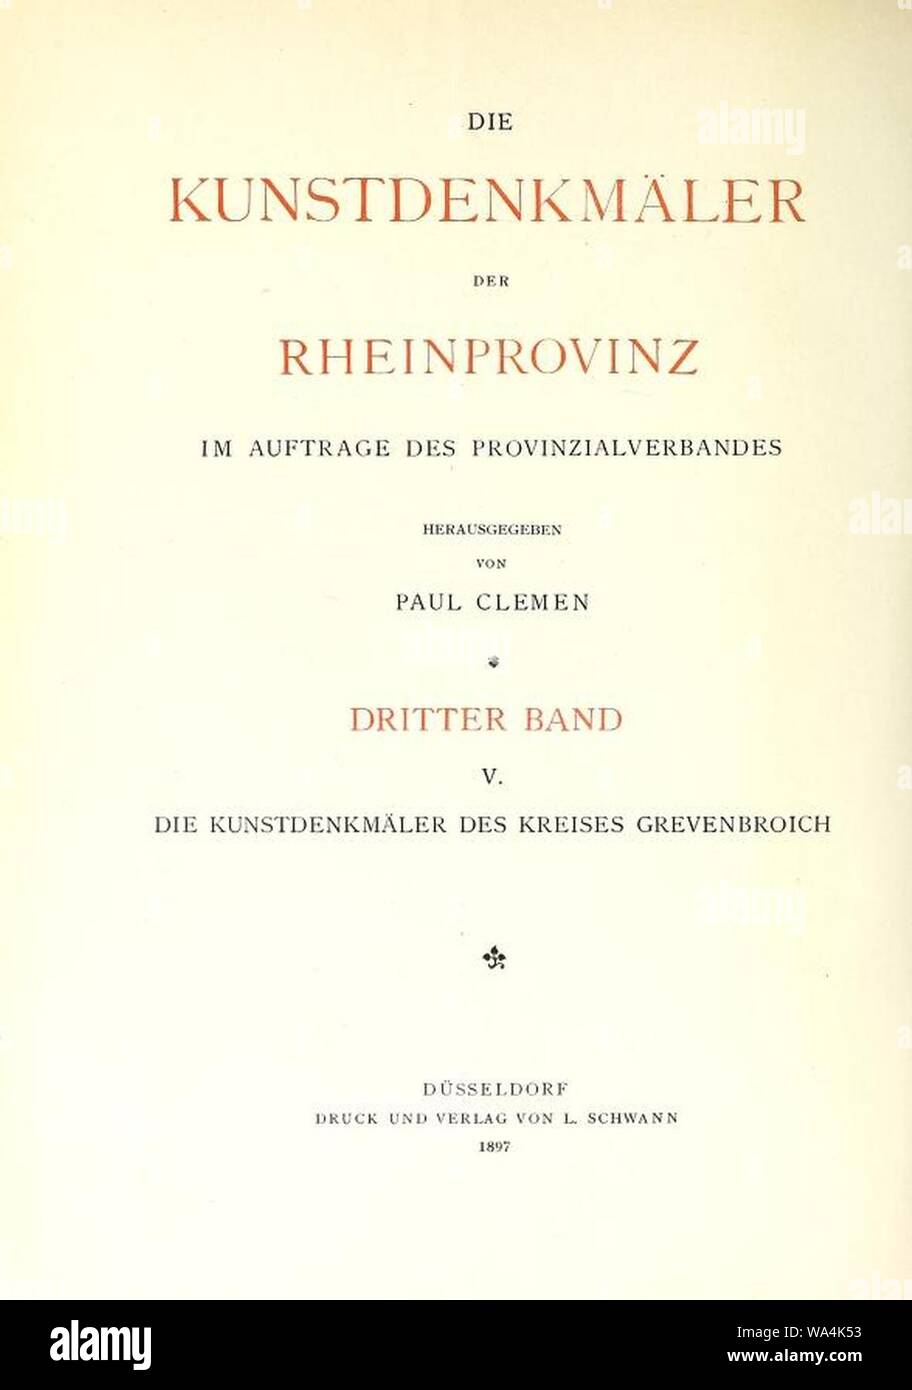 Die Kunstdenkmäler der Rheinprovinz, Innentitel, 3. Band, Abteilung 5. Foto Stock